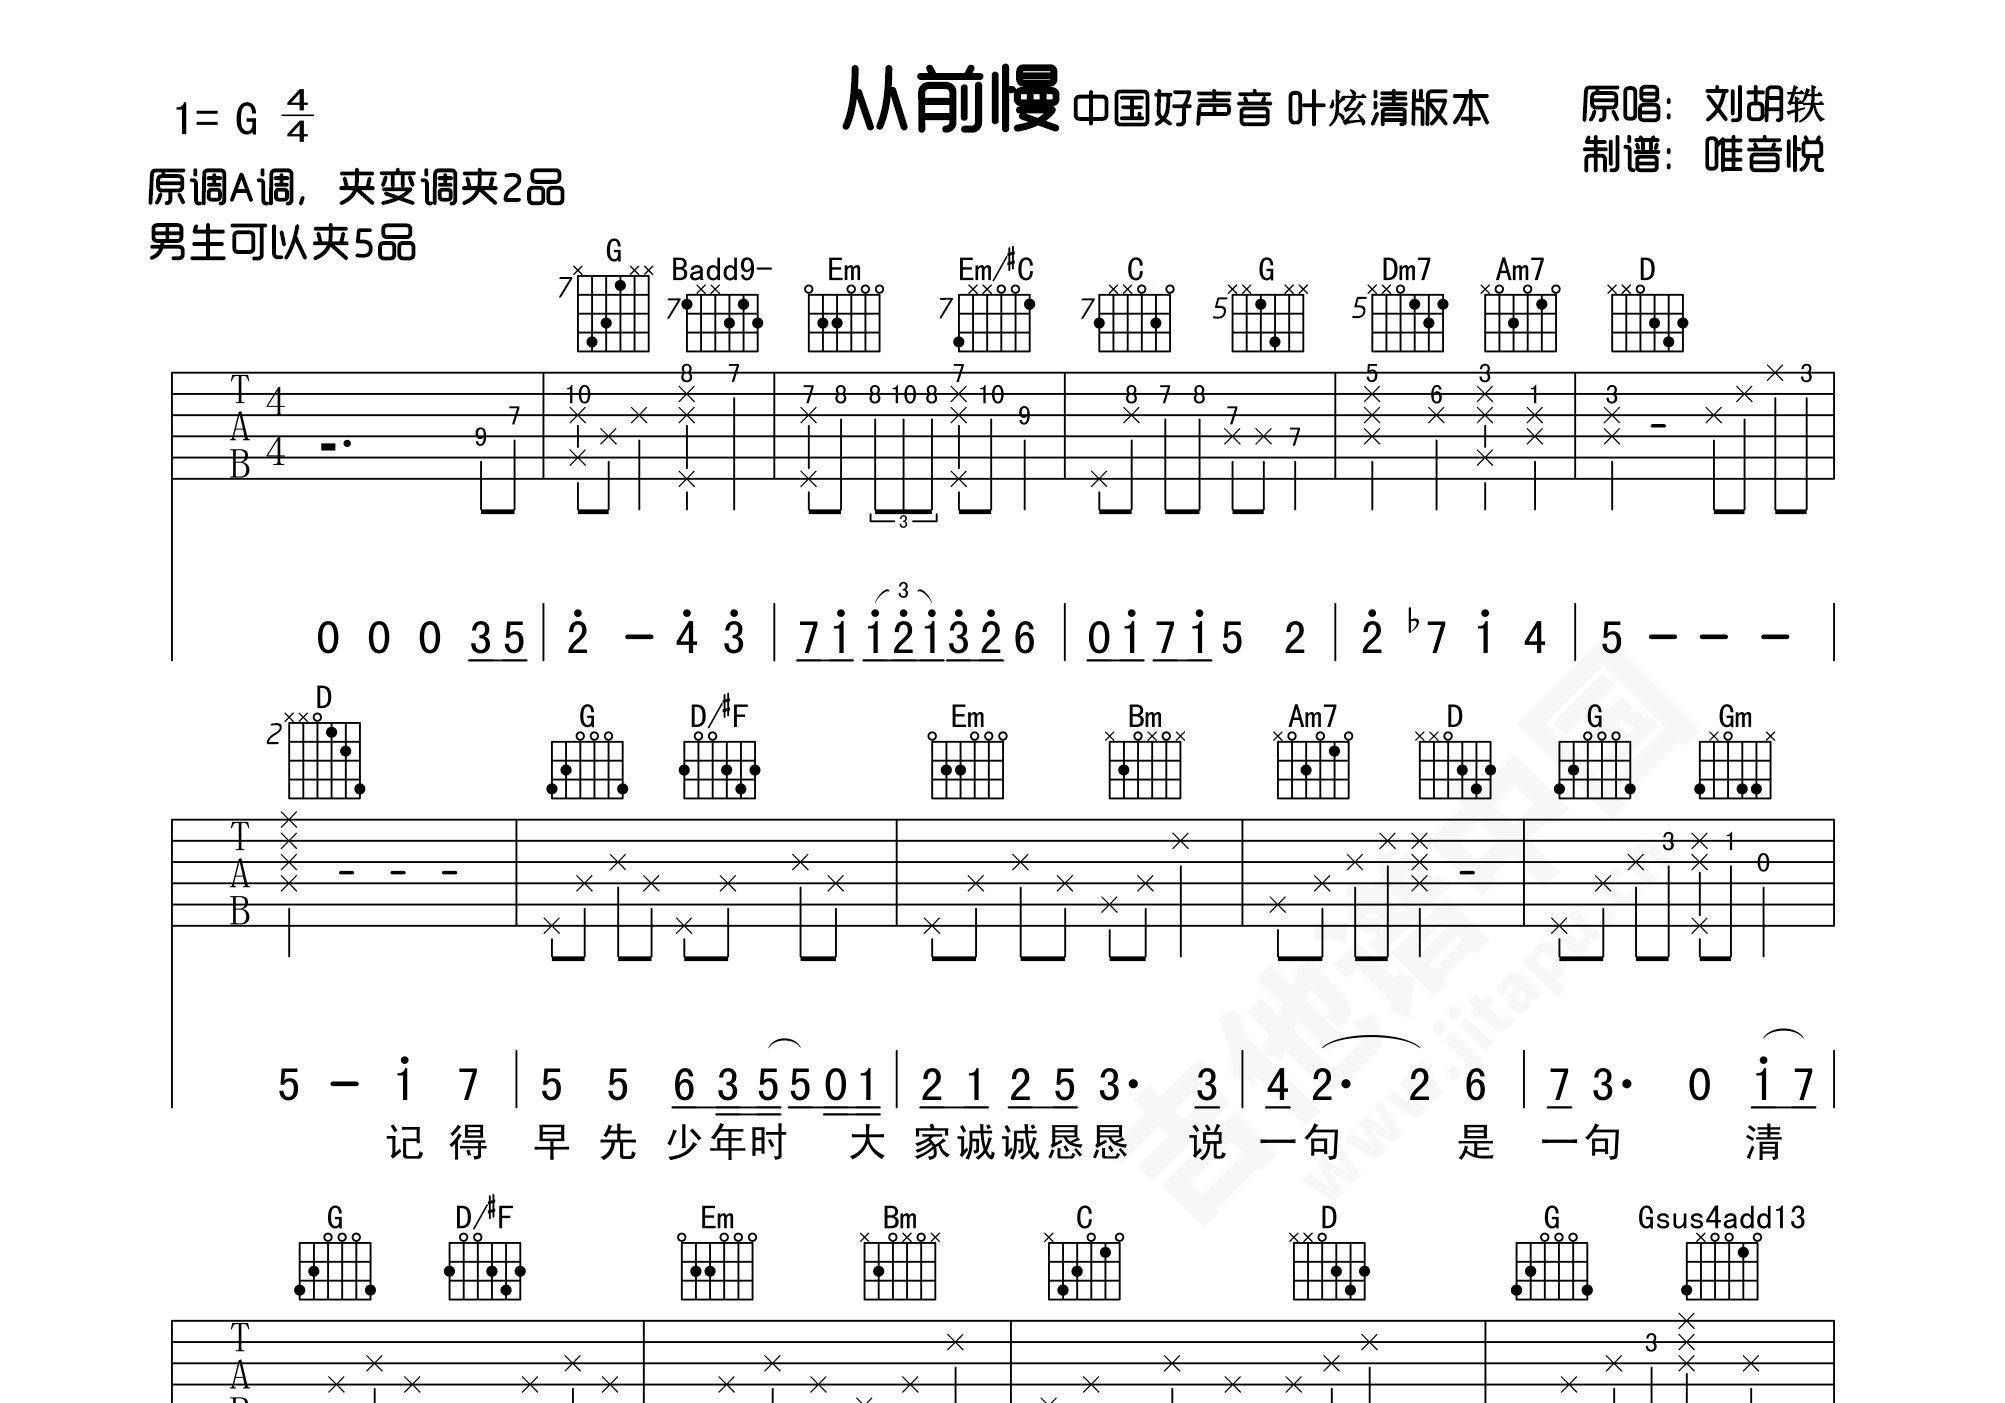 刘胡轶 - 从前慢(yoyo吉他教学 S2-09) [大伟吉他 弹唱 教学] 吉他谱